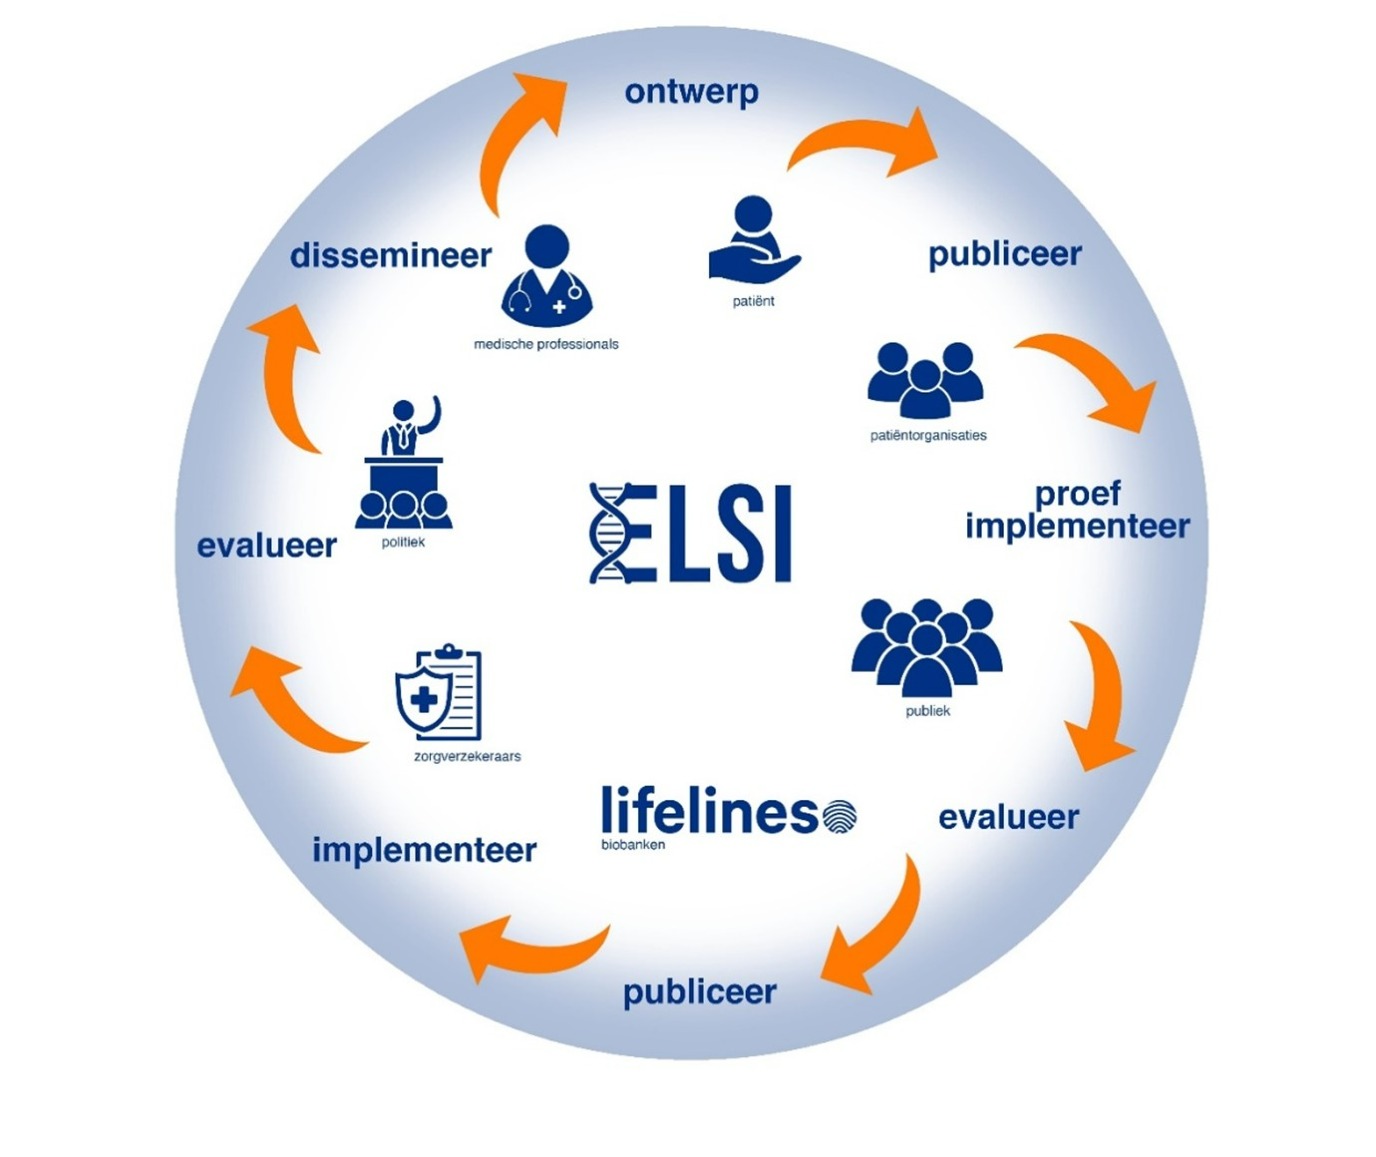 Afbelding van ELSI onderzoek cyclus als een cirkel zonder einde. Het leest: ontwerp - publiceer - proef implementeer - evalueer - publiceer - implementeer -evalueer - dissemineer en komt weer naar ontwerp.